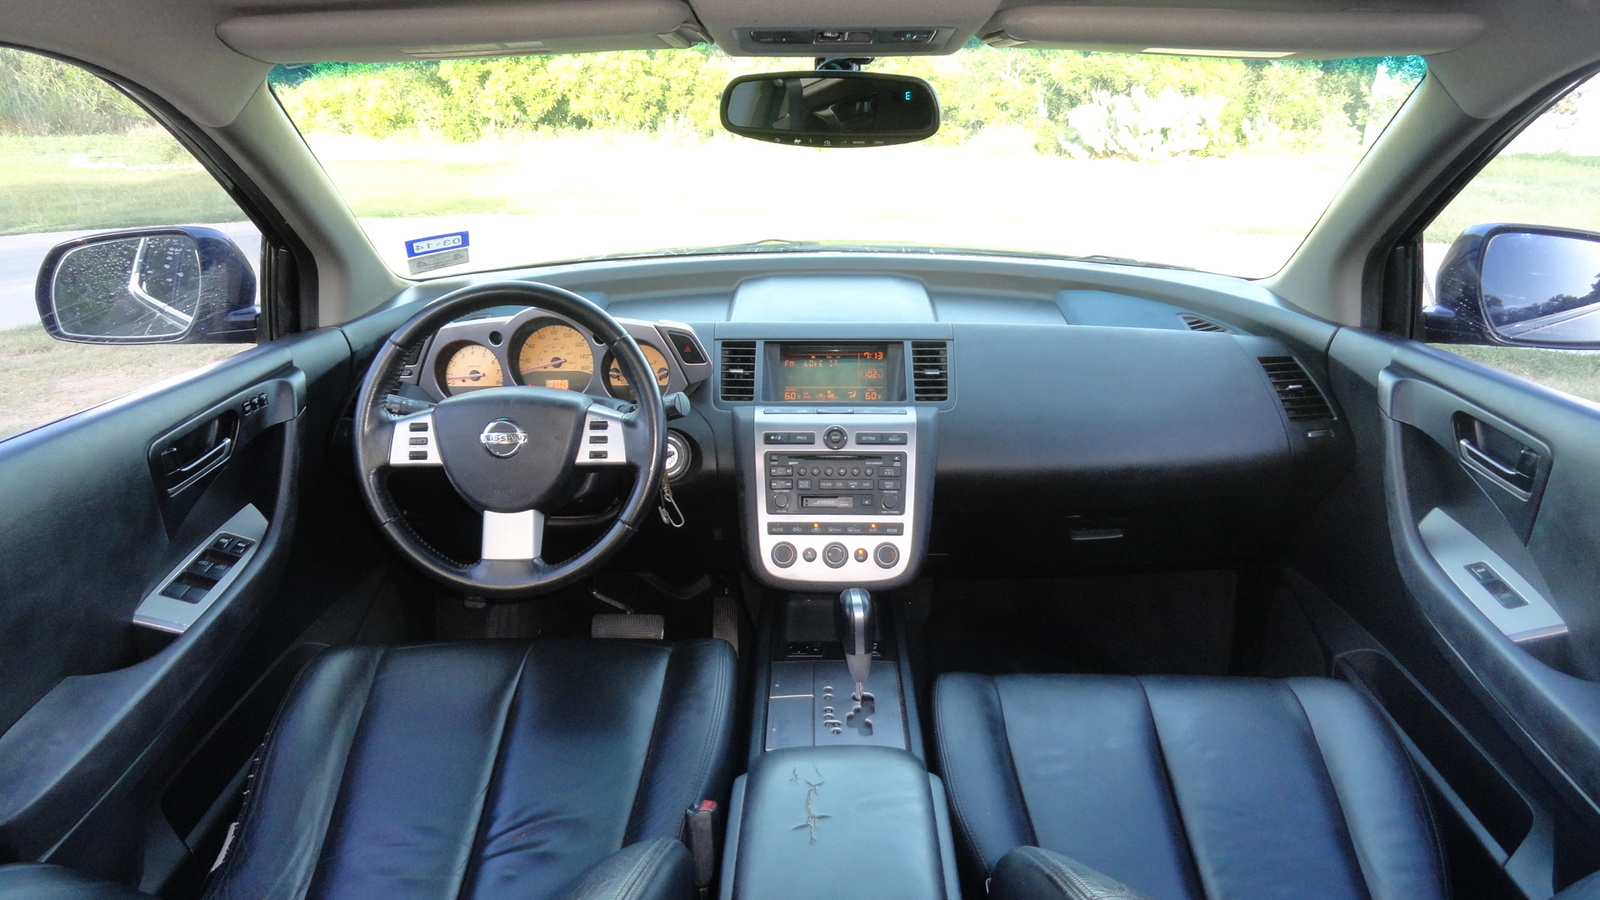 2004 Nissan murano interior dimensions #8